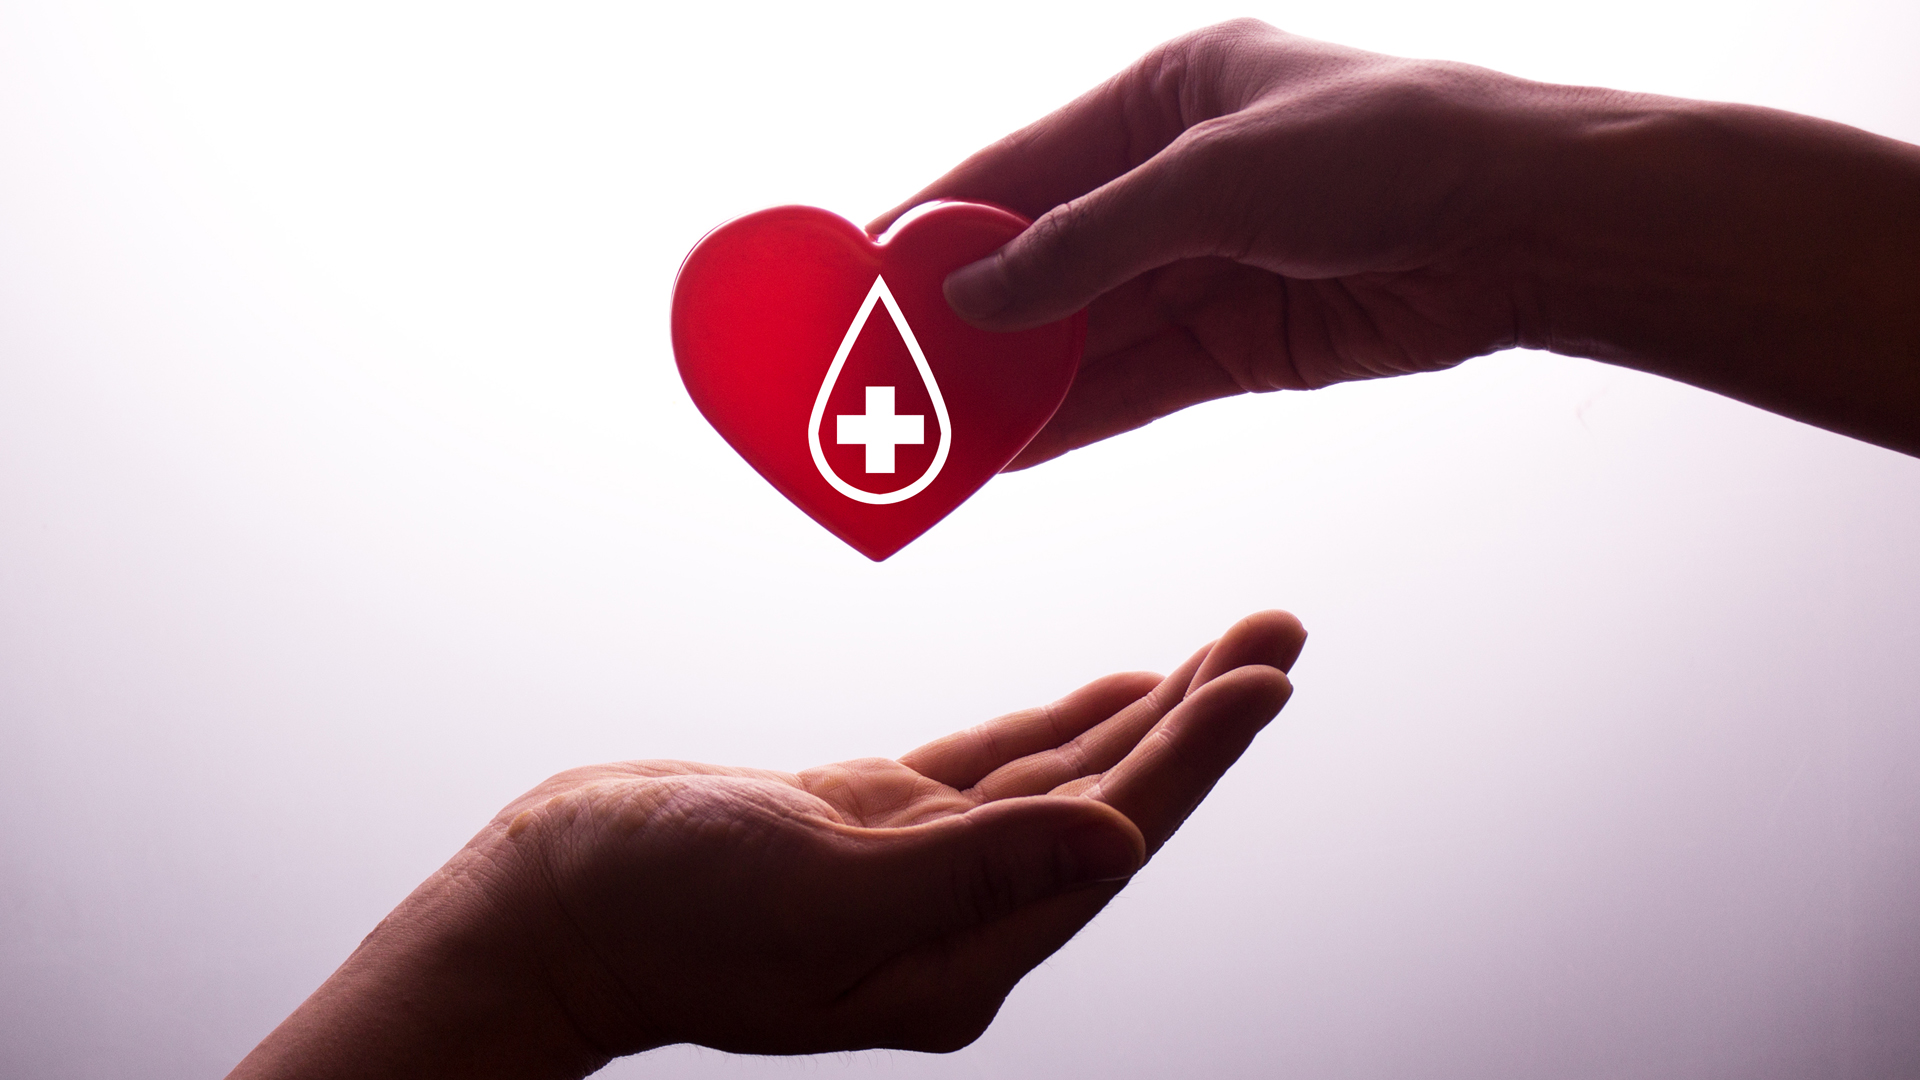 “Abierto por vacaciones”: cómo es la campaña de donación de sangre del Hospital Garrahan